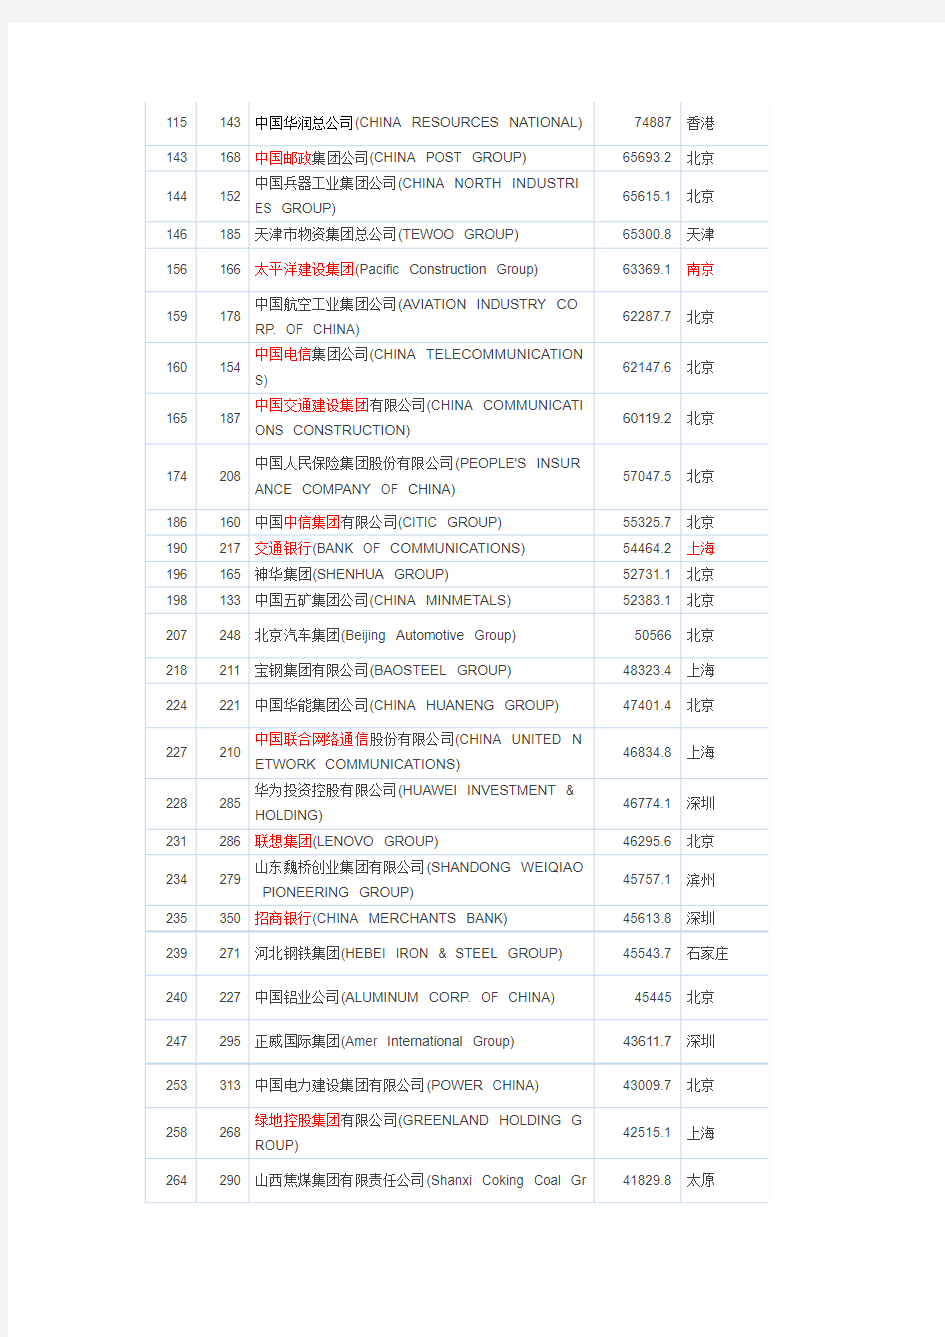 2015世界500强的中国企业